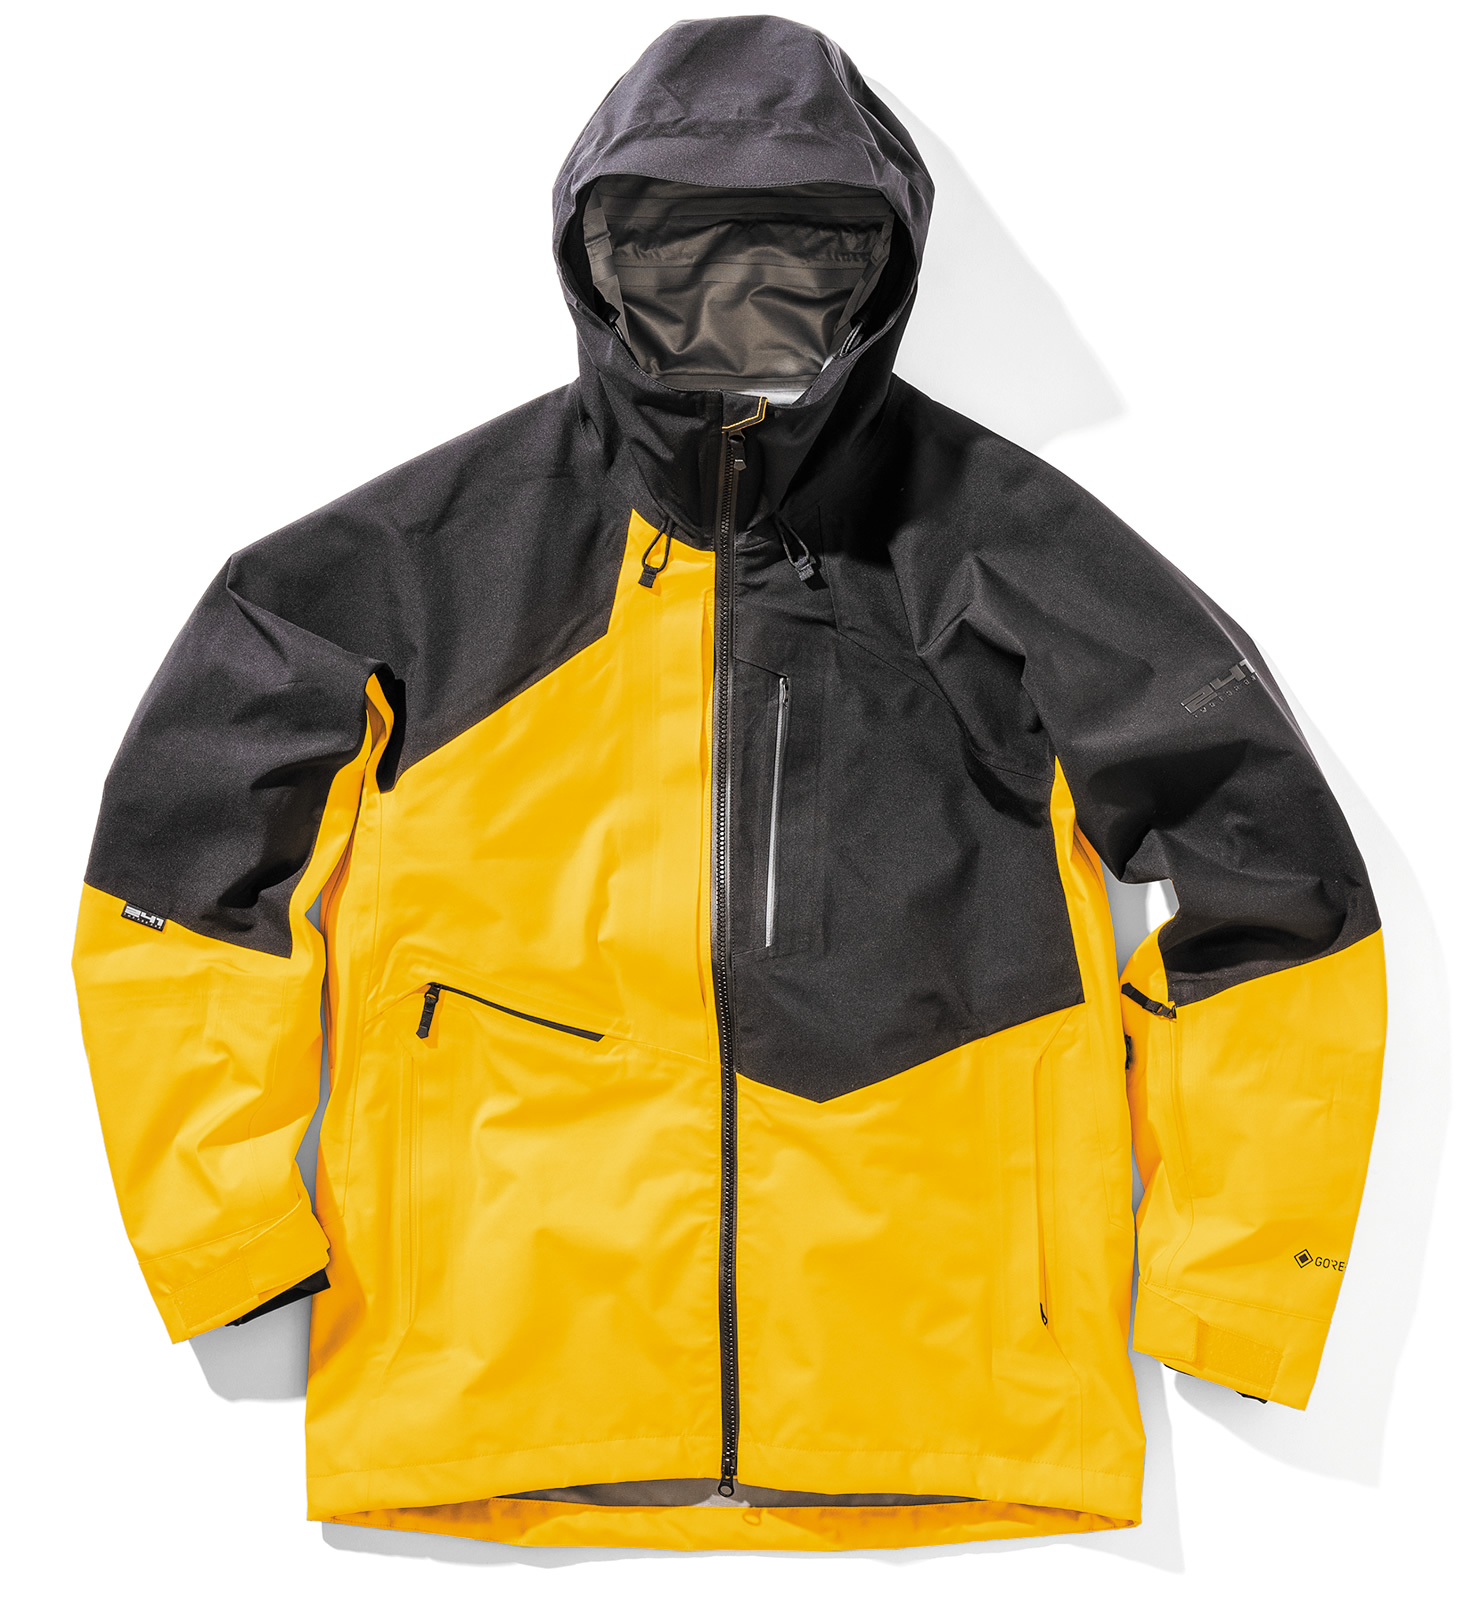 美品 241 Seeker jacket 黒 XL GORE-TEX